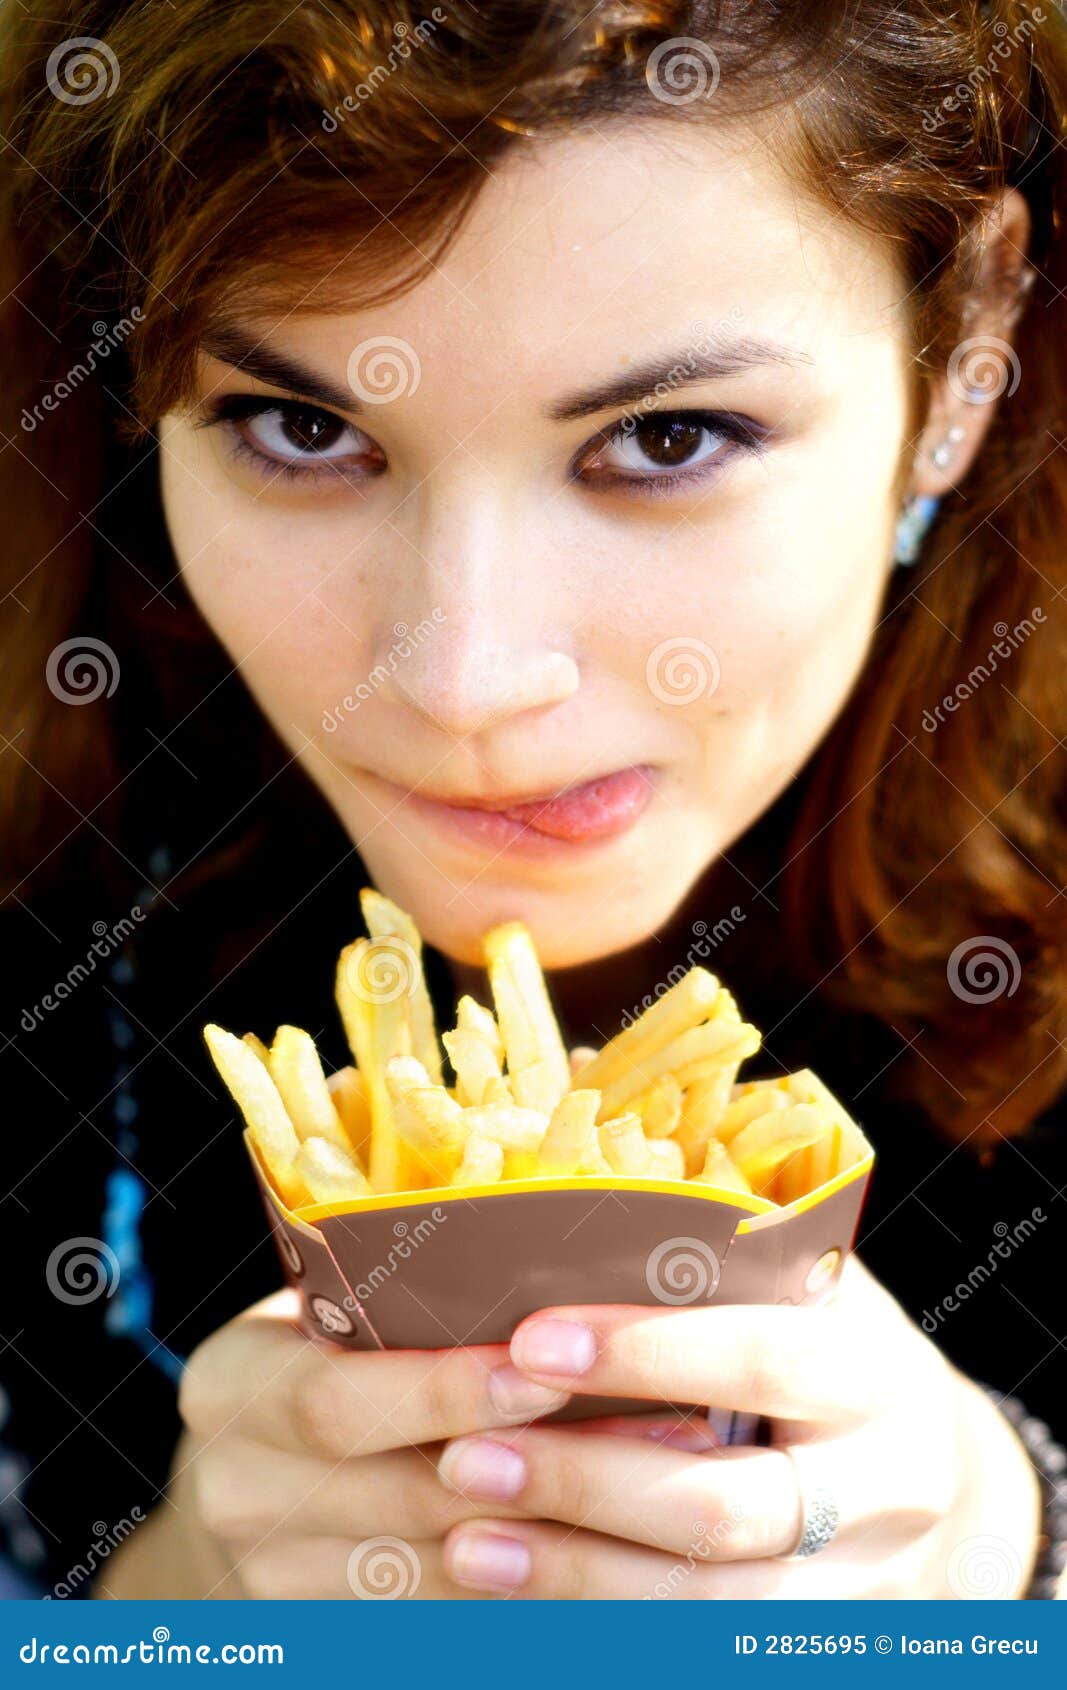 tasty french fries